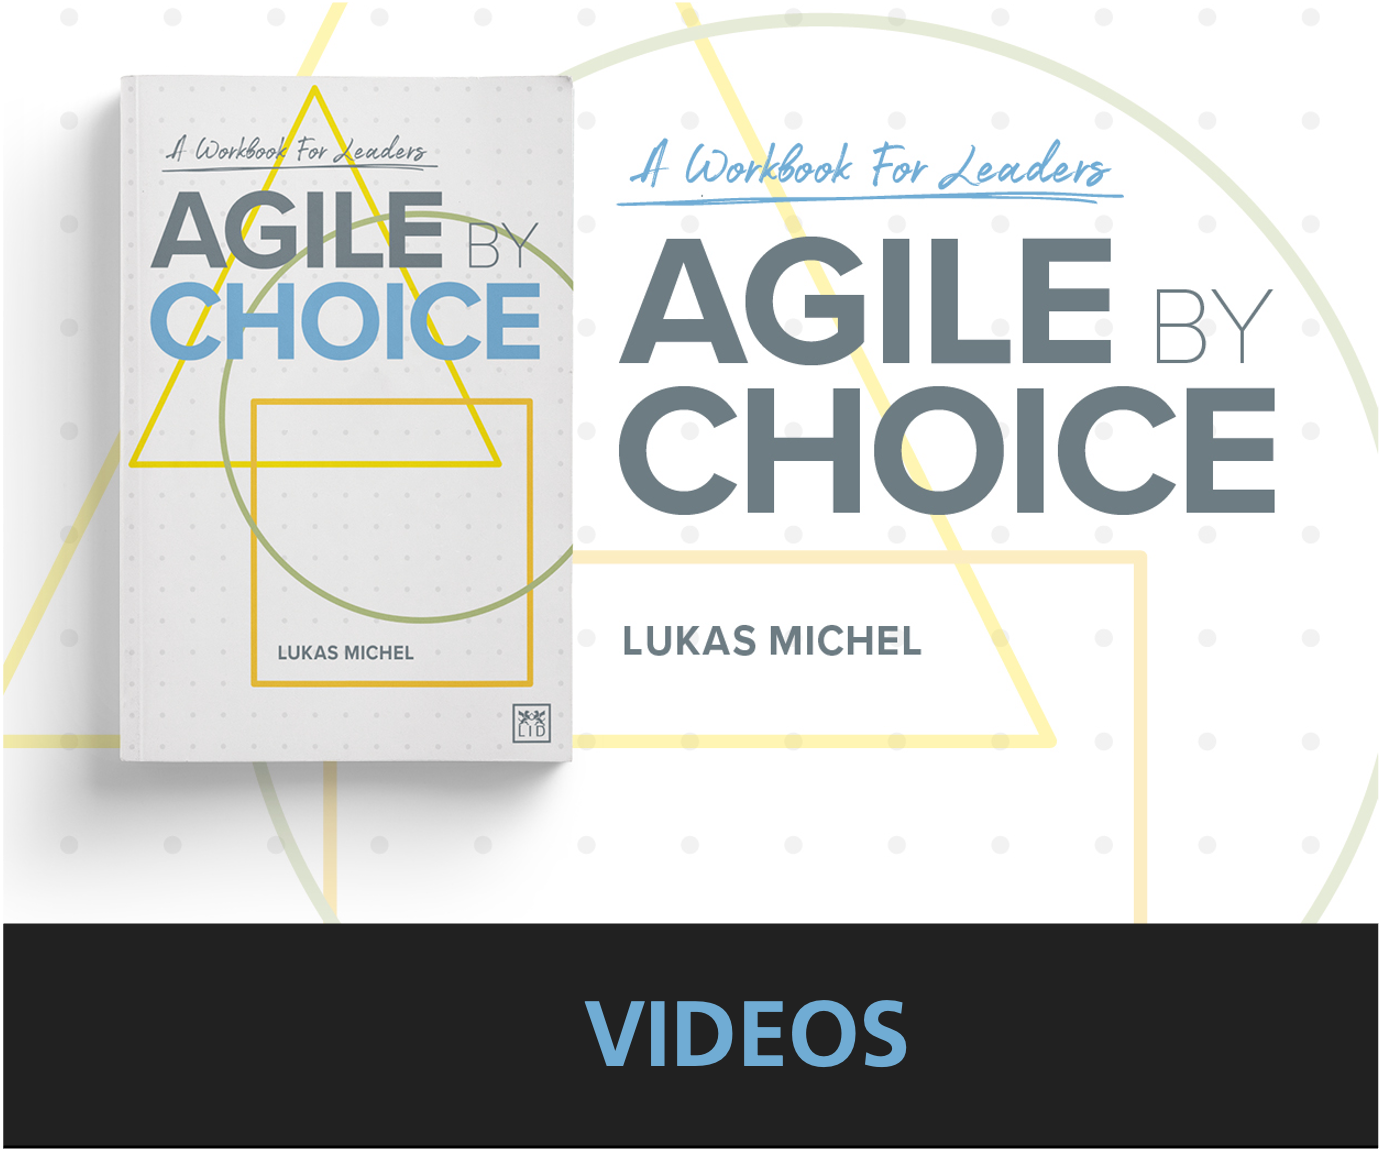 Agile by Choice: An Introduction